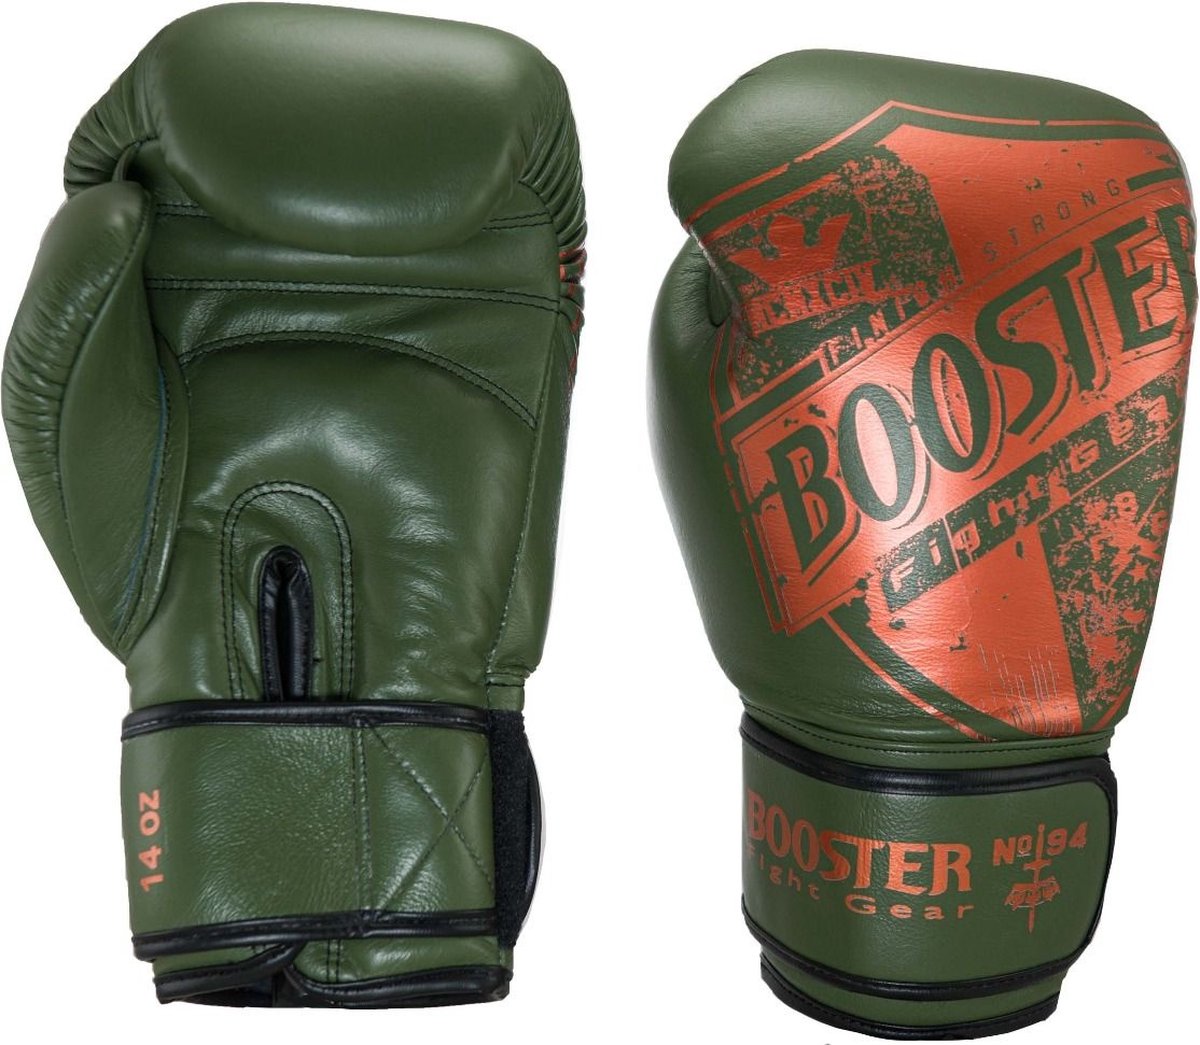 Booster (kick)bokshandschoenen Pro-Shield 3 Groen/Oranje 14oz